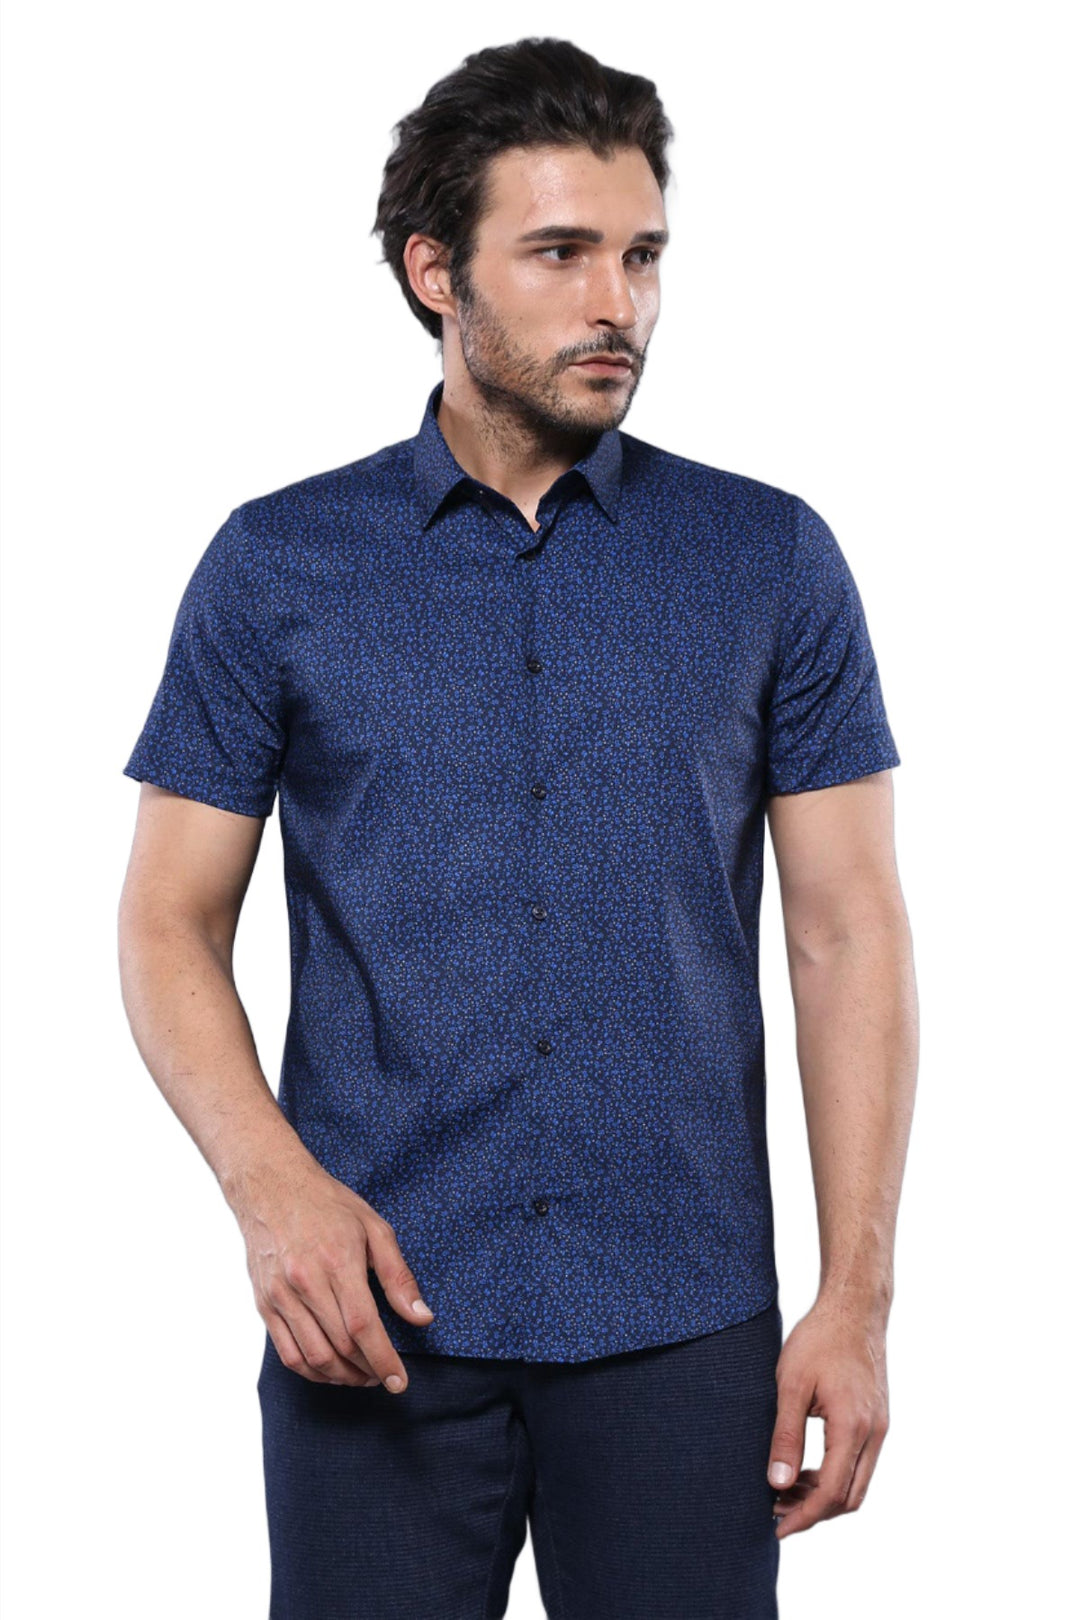 Patterned Short Sleeves Navy Blue Men Shirt - Wessi